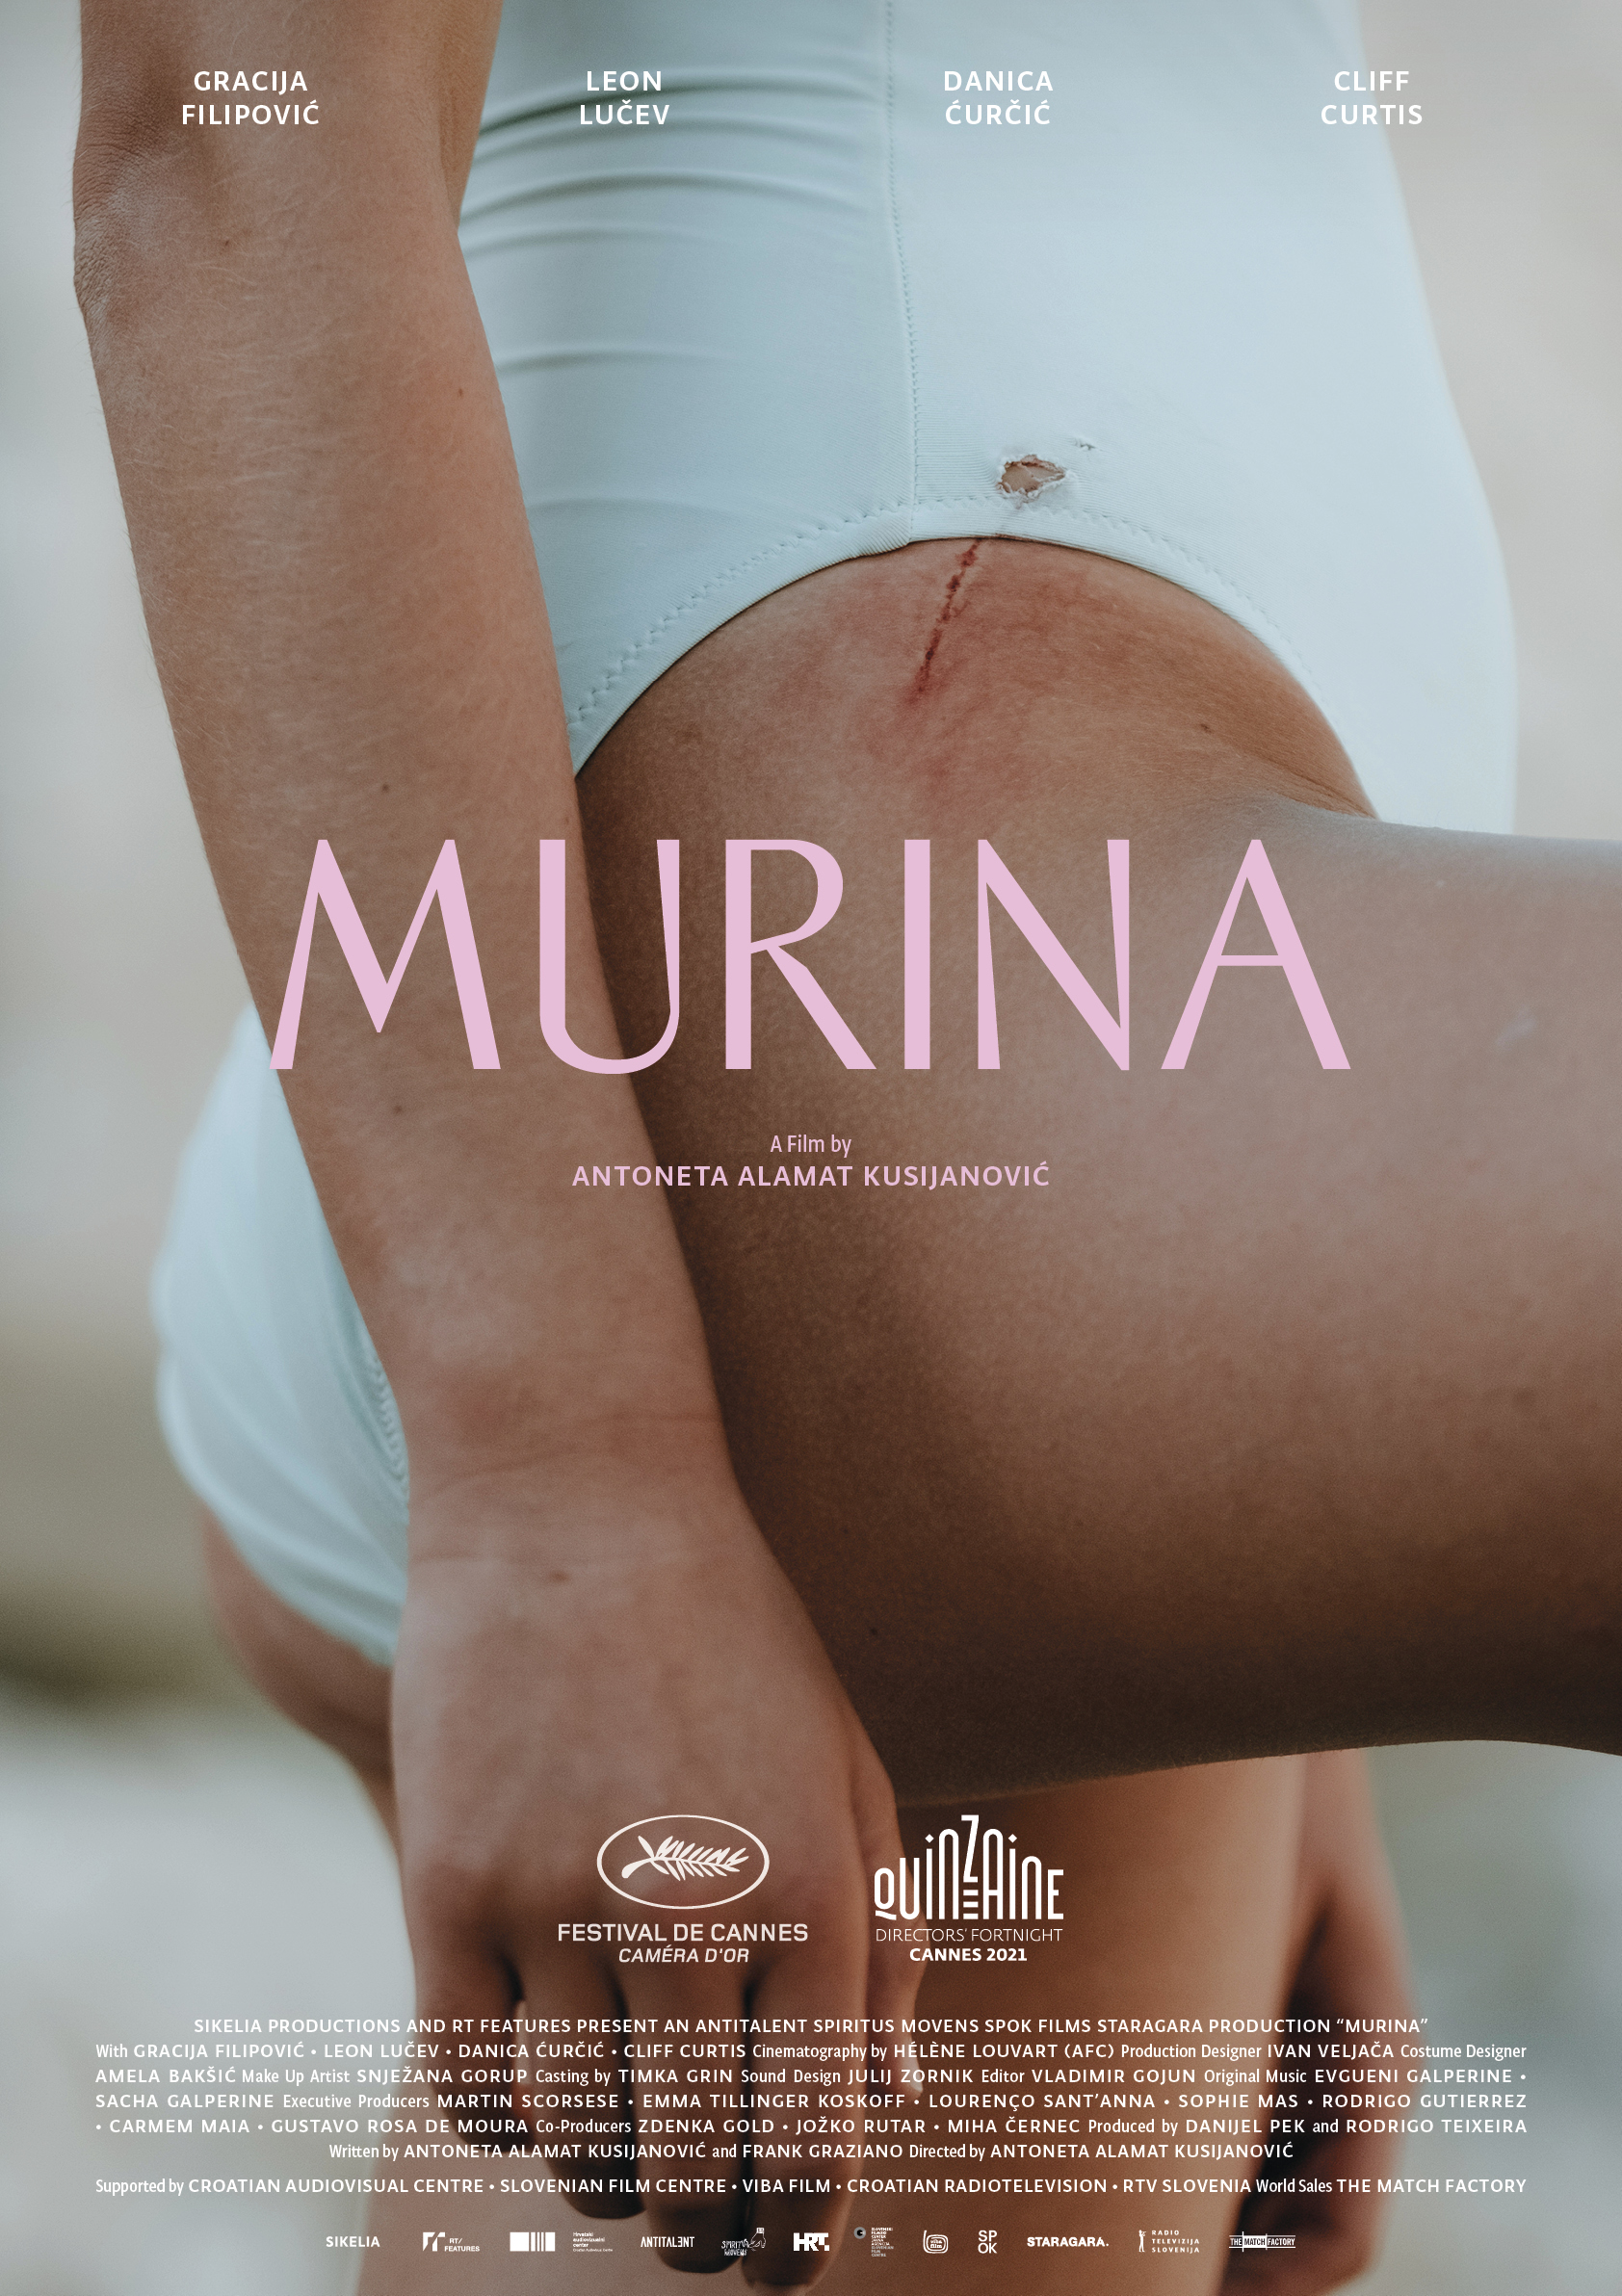 مورینا (Murina)